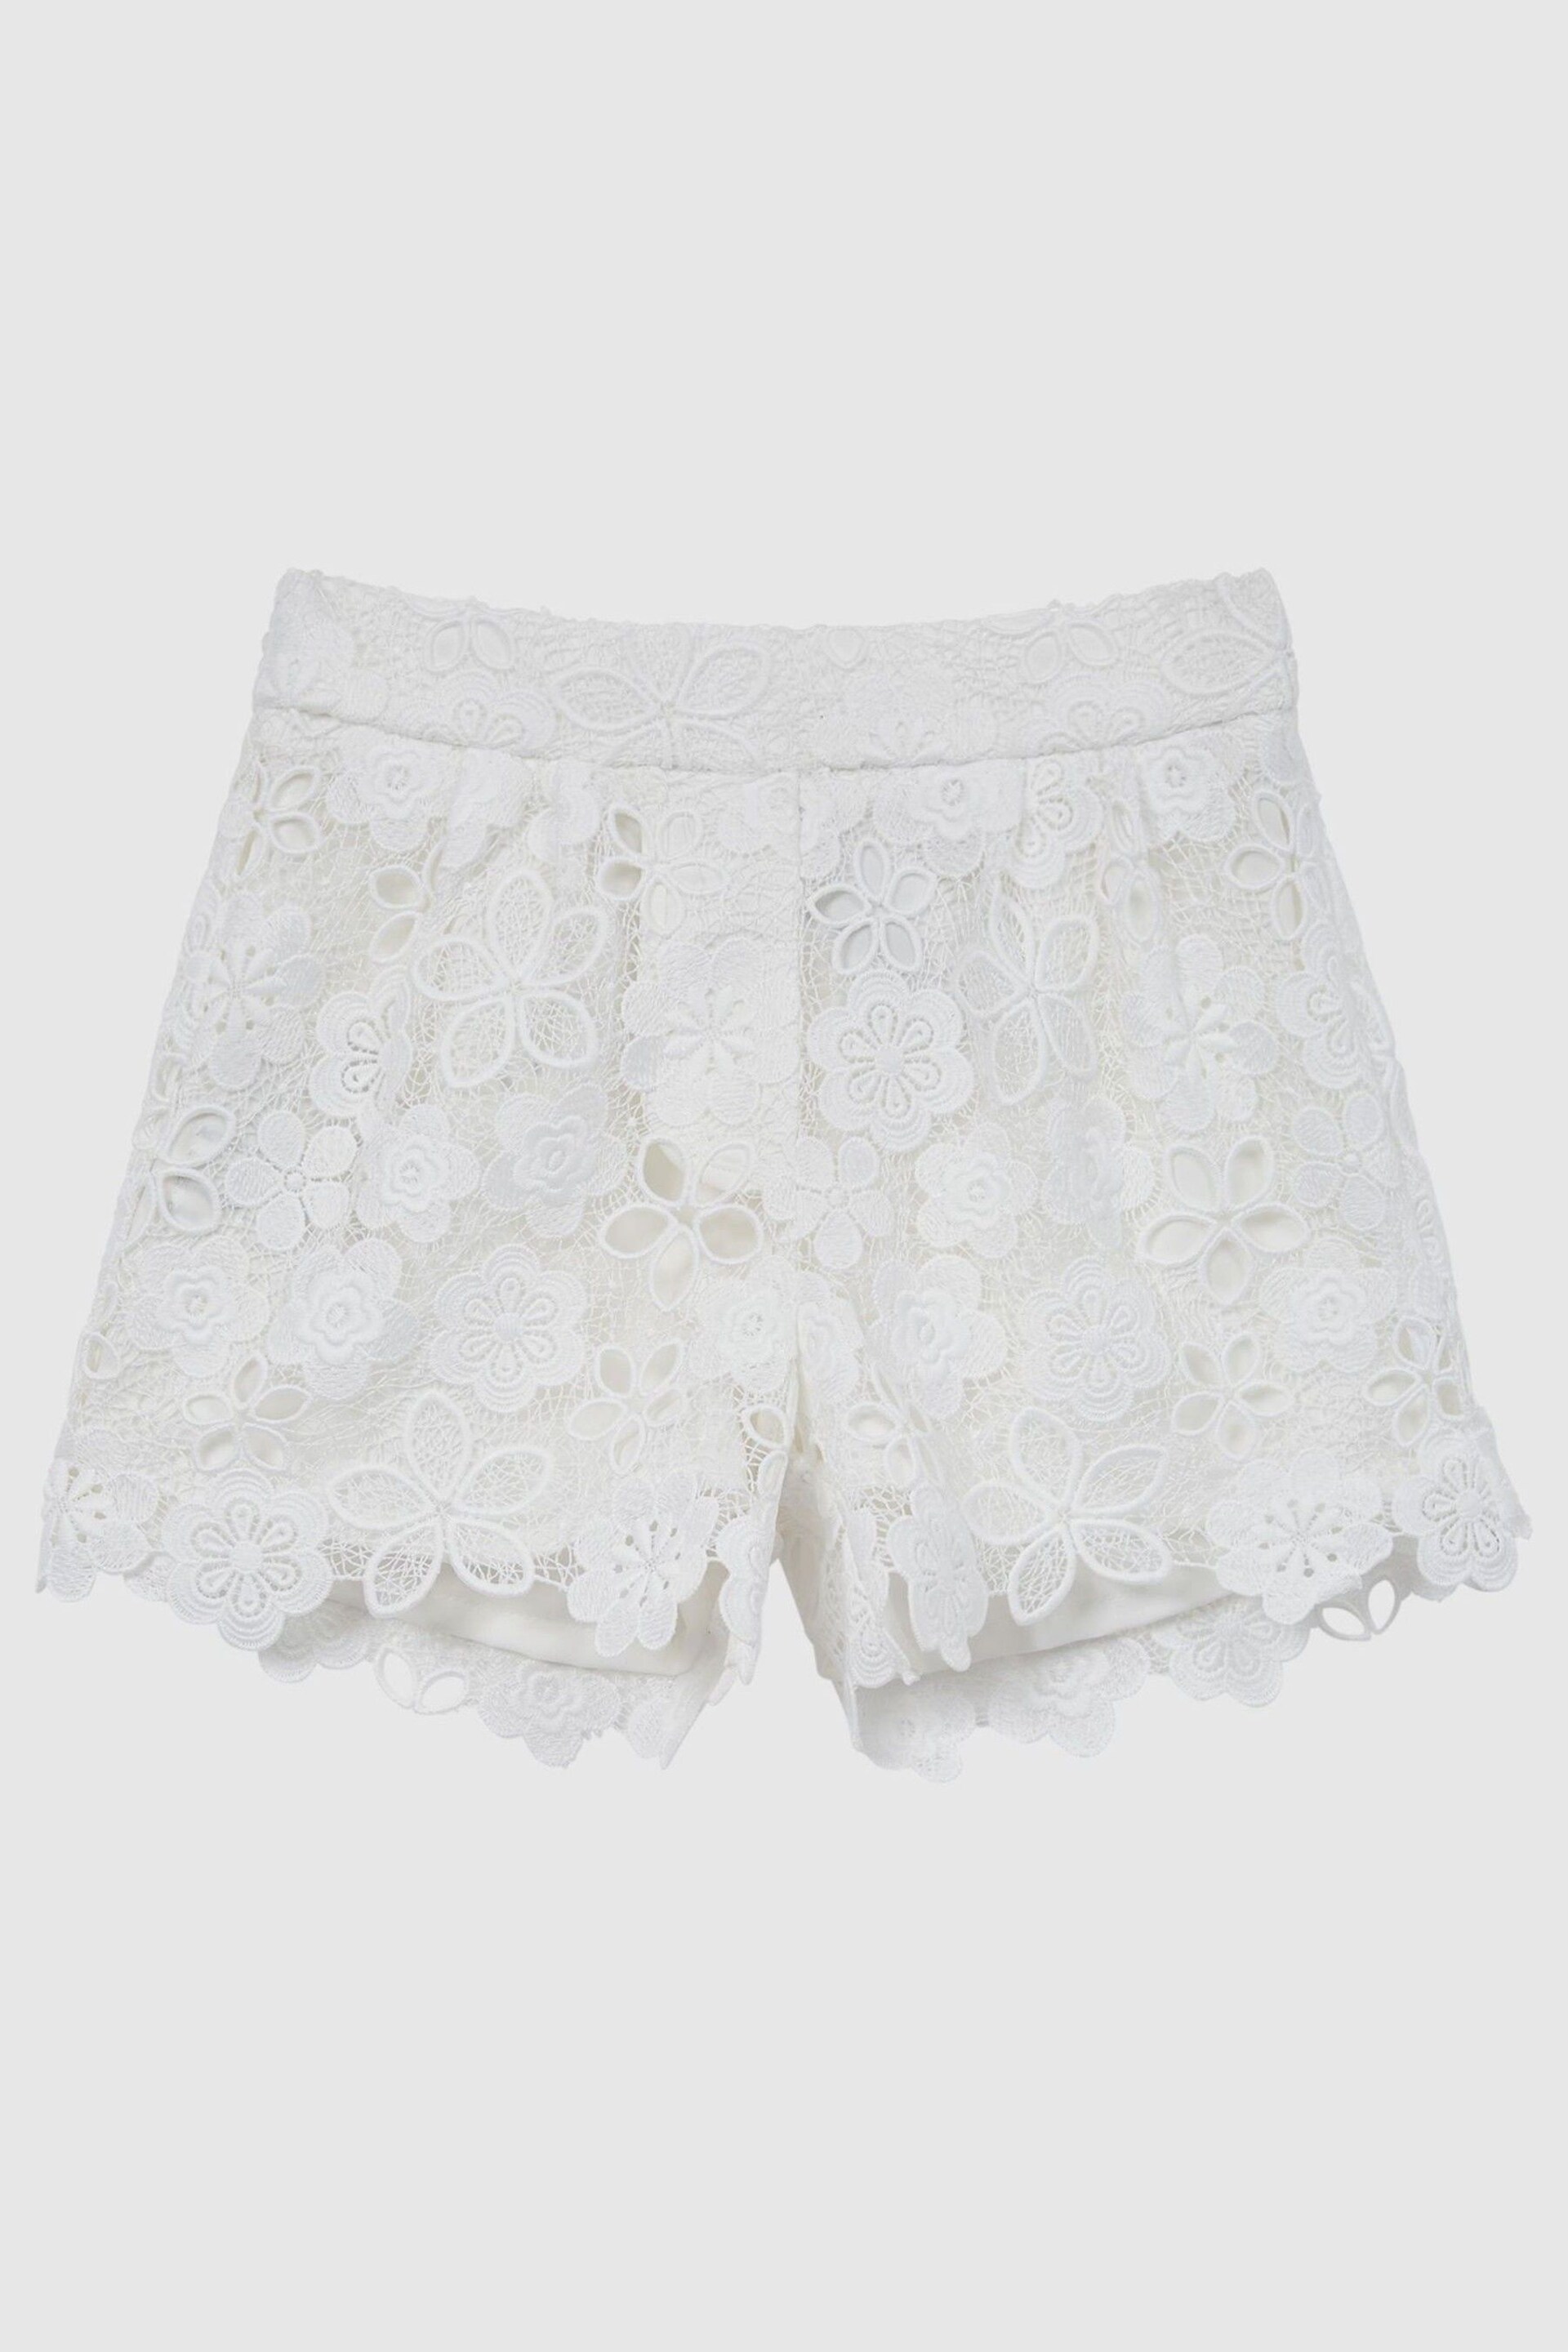 Reiss Ivory Skylar Junior Lace Shorts - Image 2 of 6